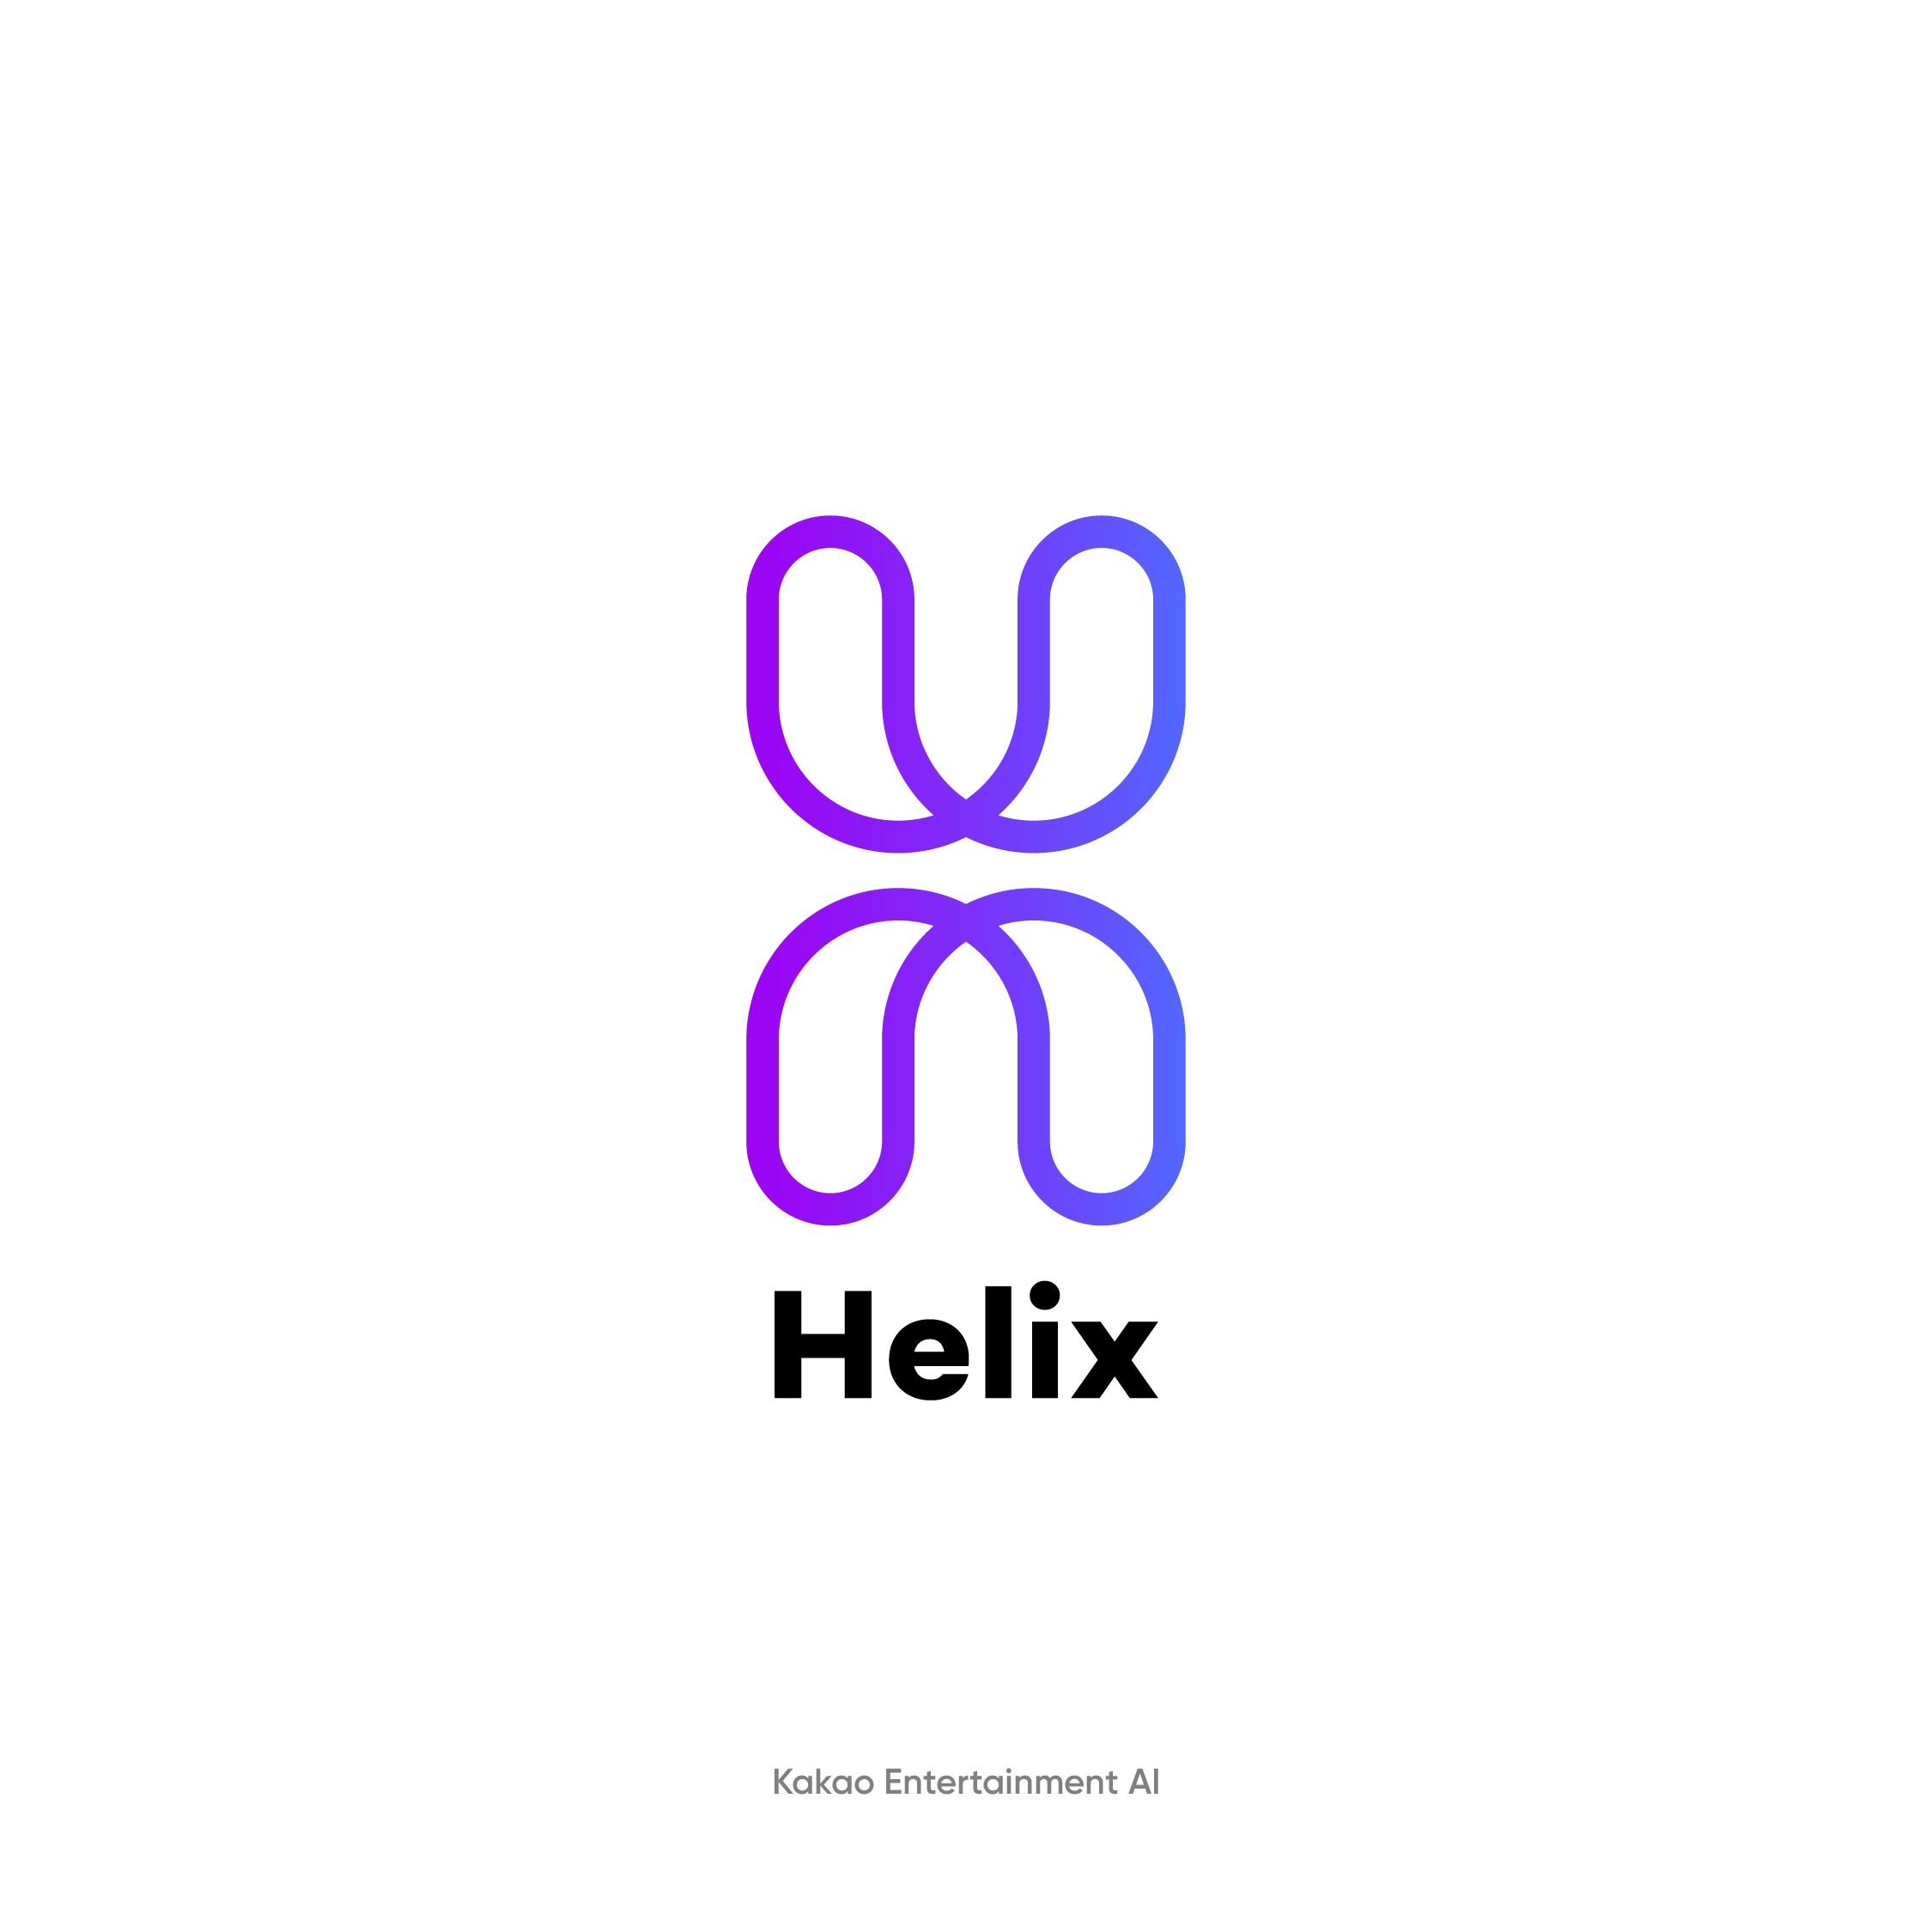 230706 [그림1] 브랜드 헬릭스(Helix) 공식 로고.jpg